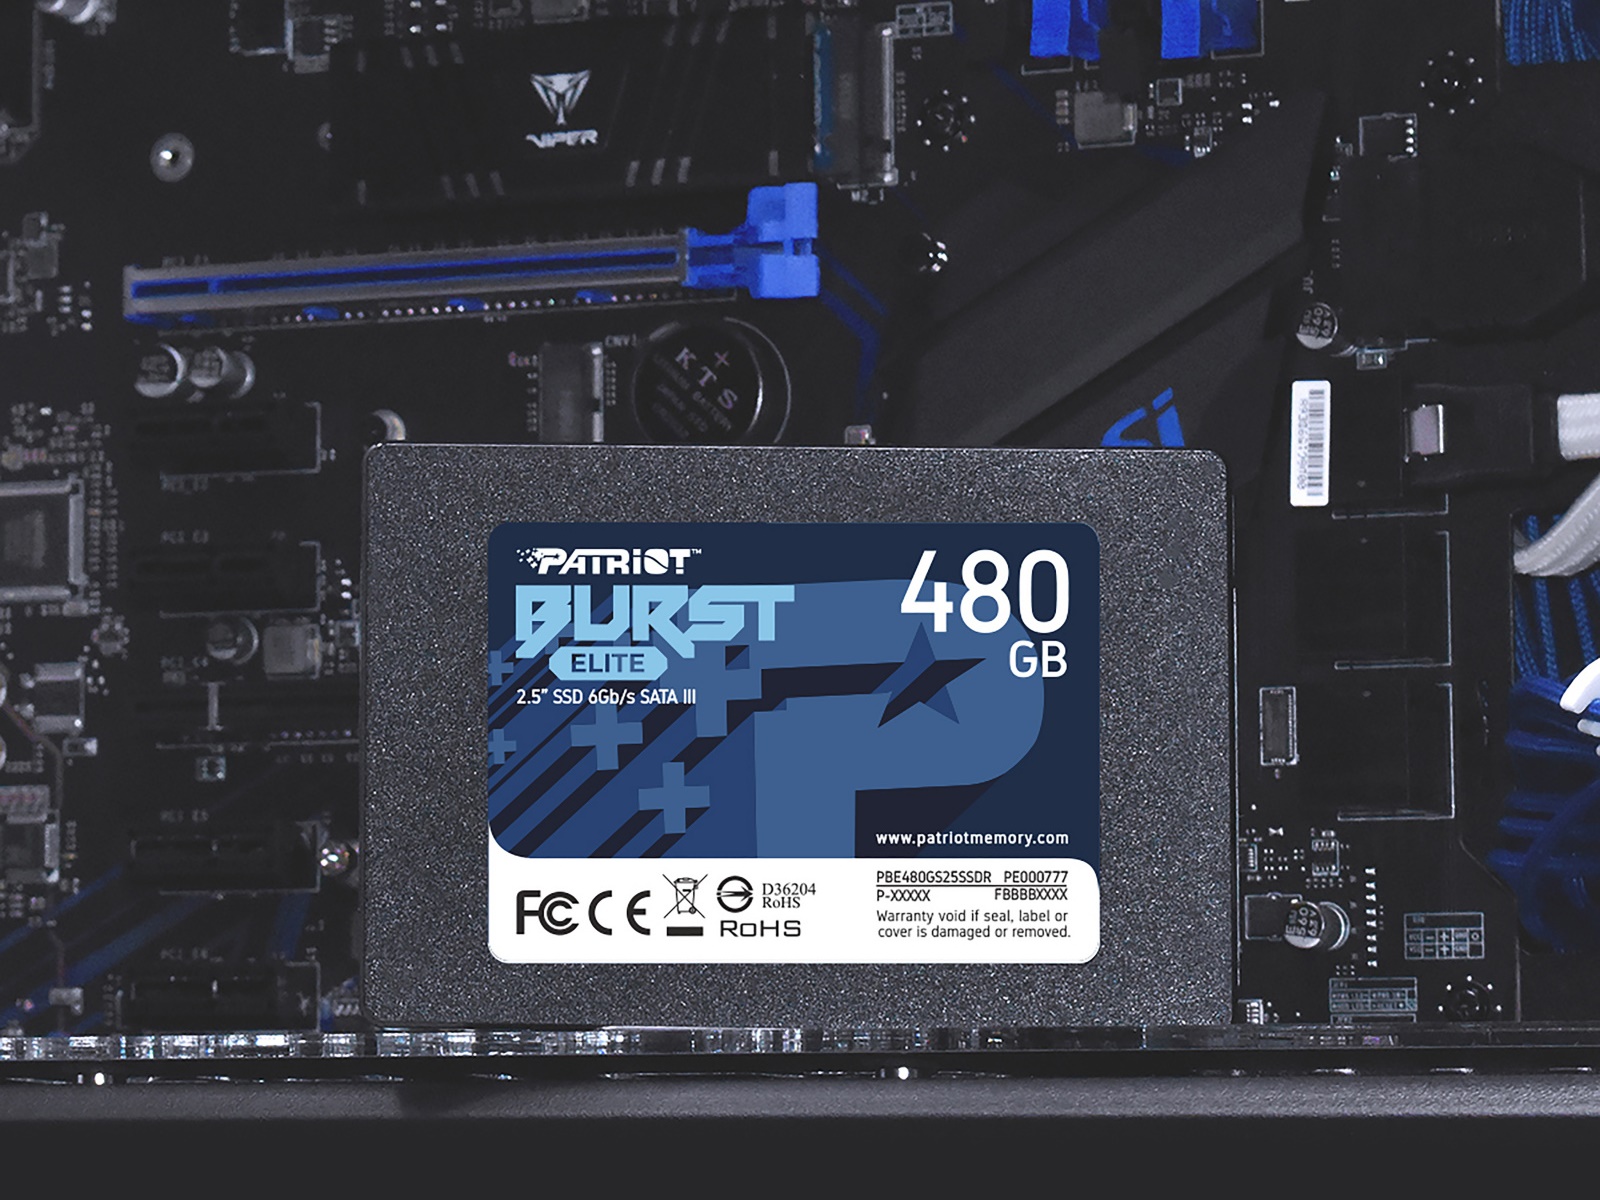 Interní SSD disk Patriot Burst Elite o kapacitě 480 GB nabízí vysoké přenosové rychlosti, aby zabránil zpomalování výkonu ze strany úložiště.